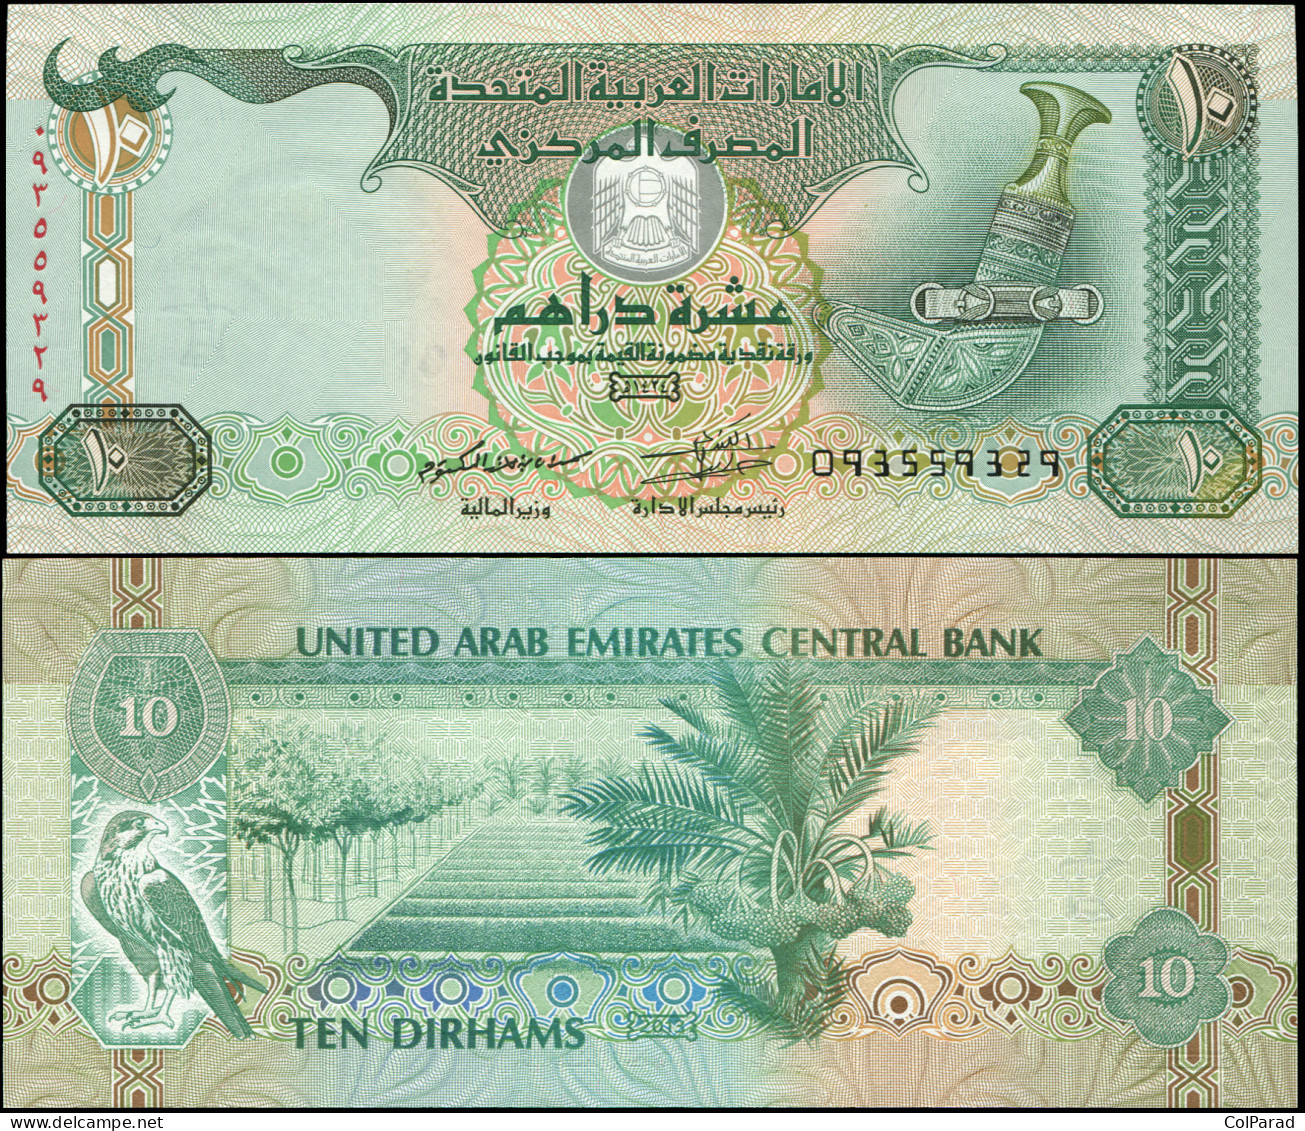 UNITED ARAB EMIRATES 10 DIRHAMS - ١٤٣٤ / 2013 - Unc - P.27b Paper Banknote - Emirats Arabes Unis